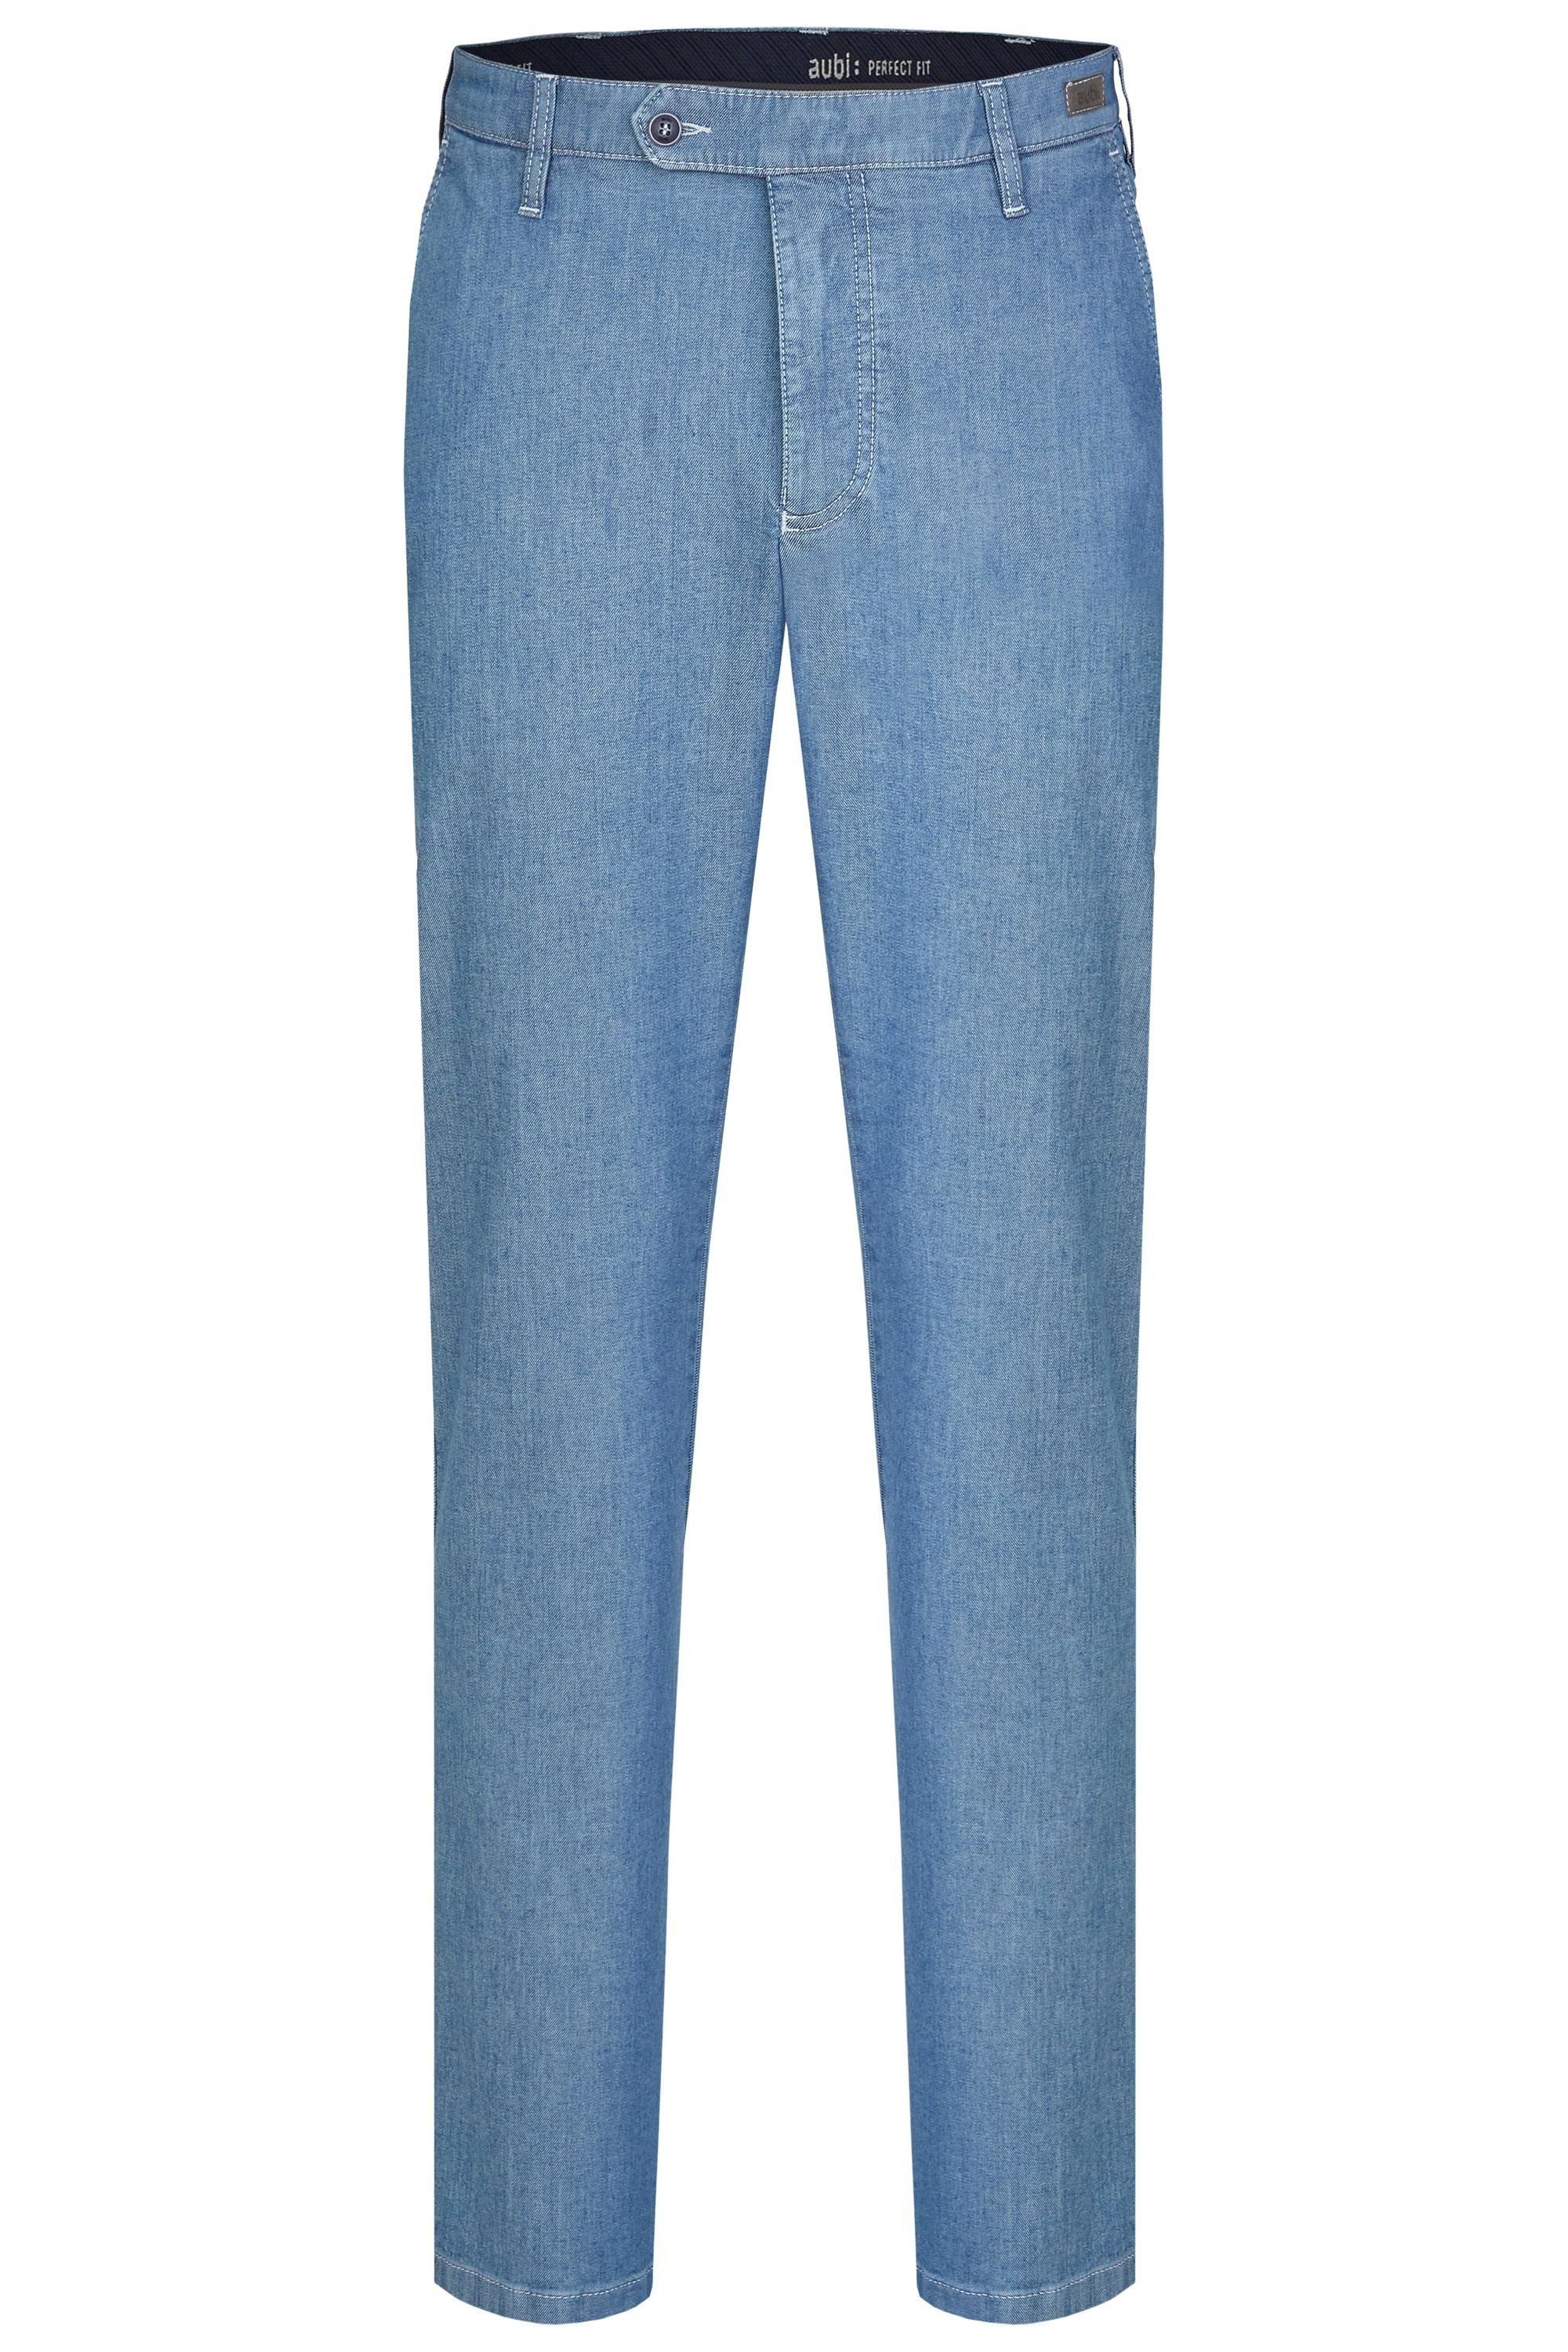 aubi: Bequeme Jeans »aubi Perfect Fit Herren Sommer Jeans Hose Stretch aus  Baumwolle High Flex Modell 526« online kaufen | OTTO